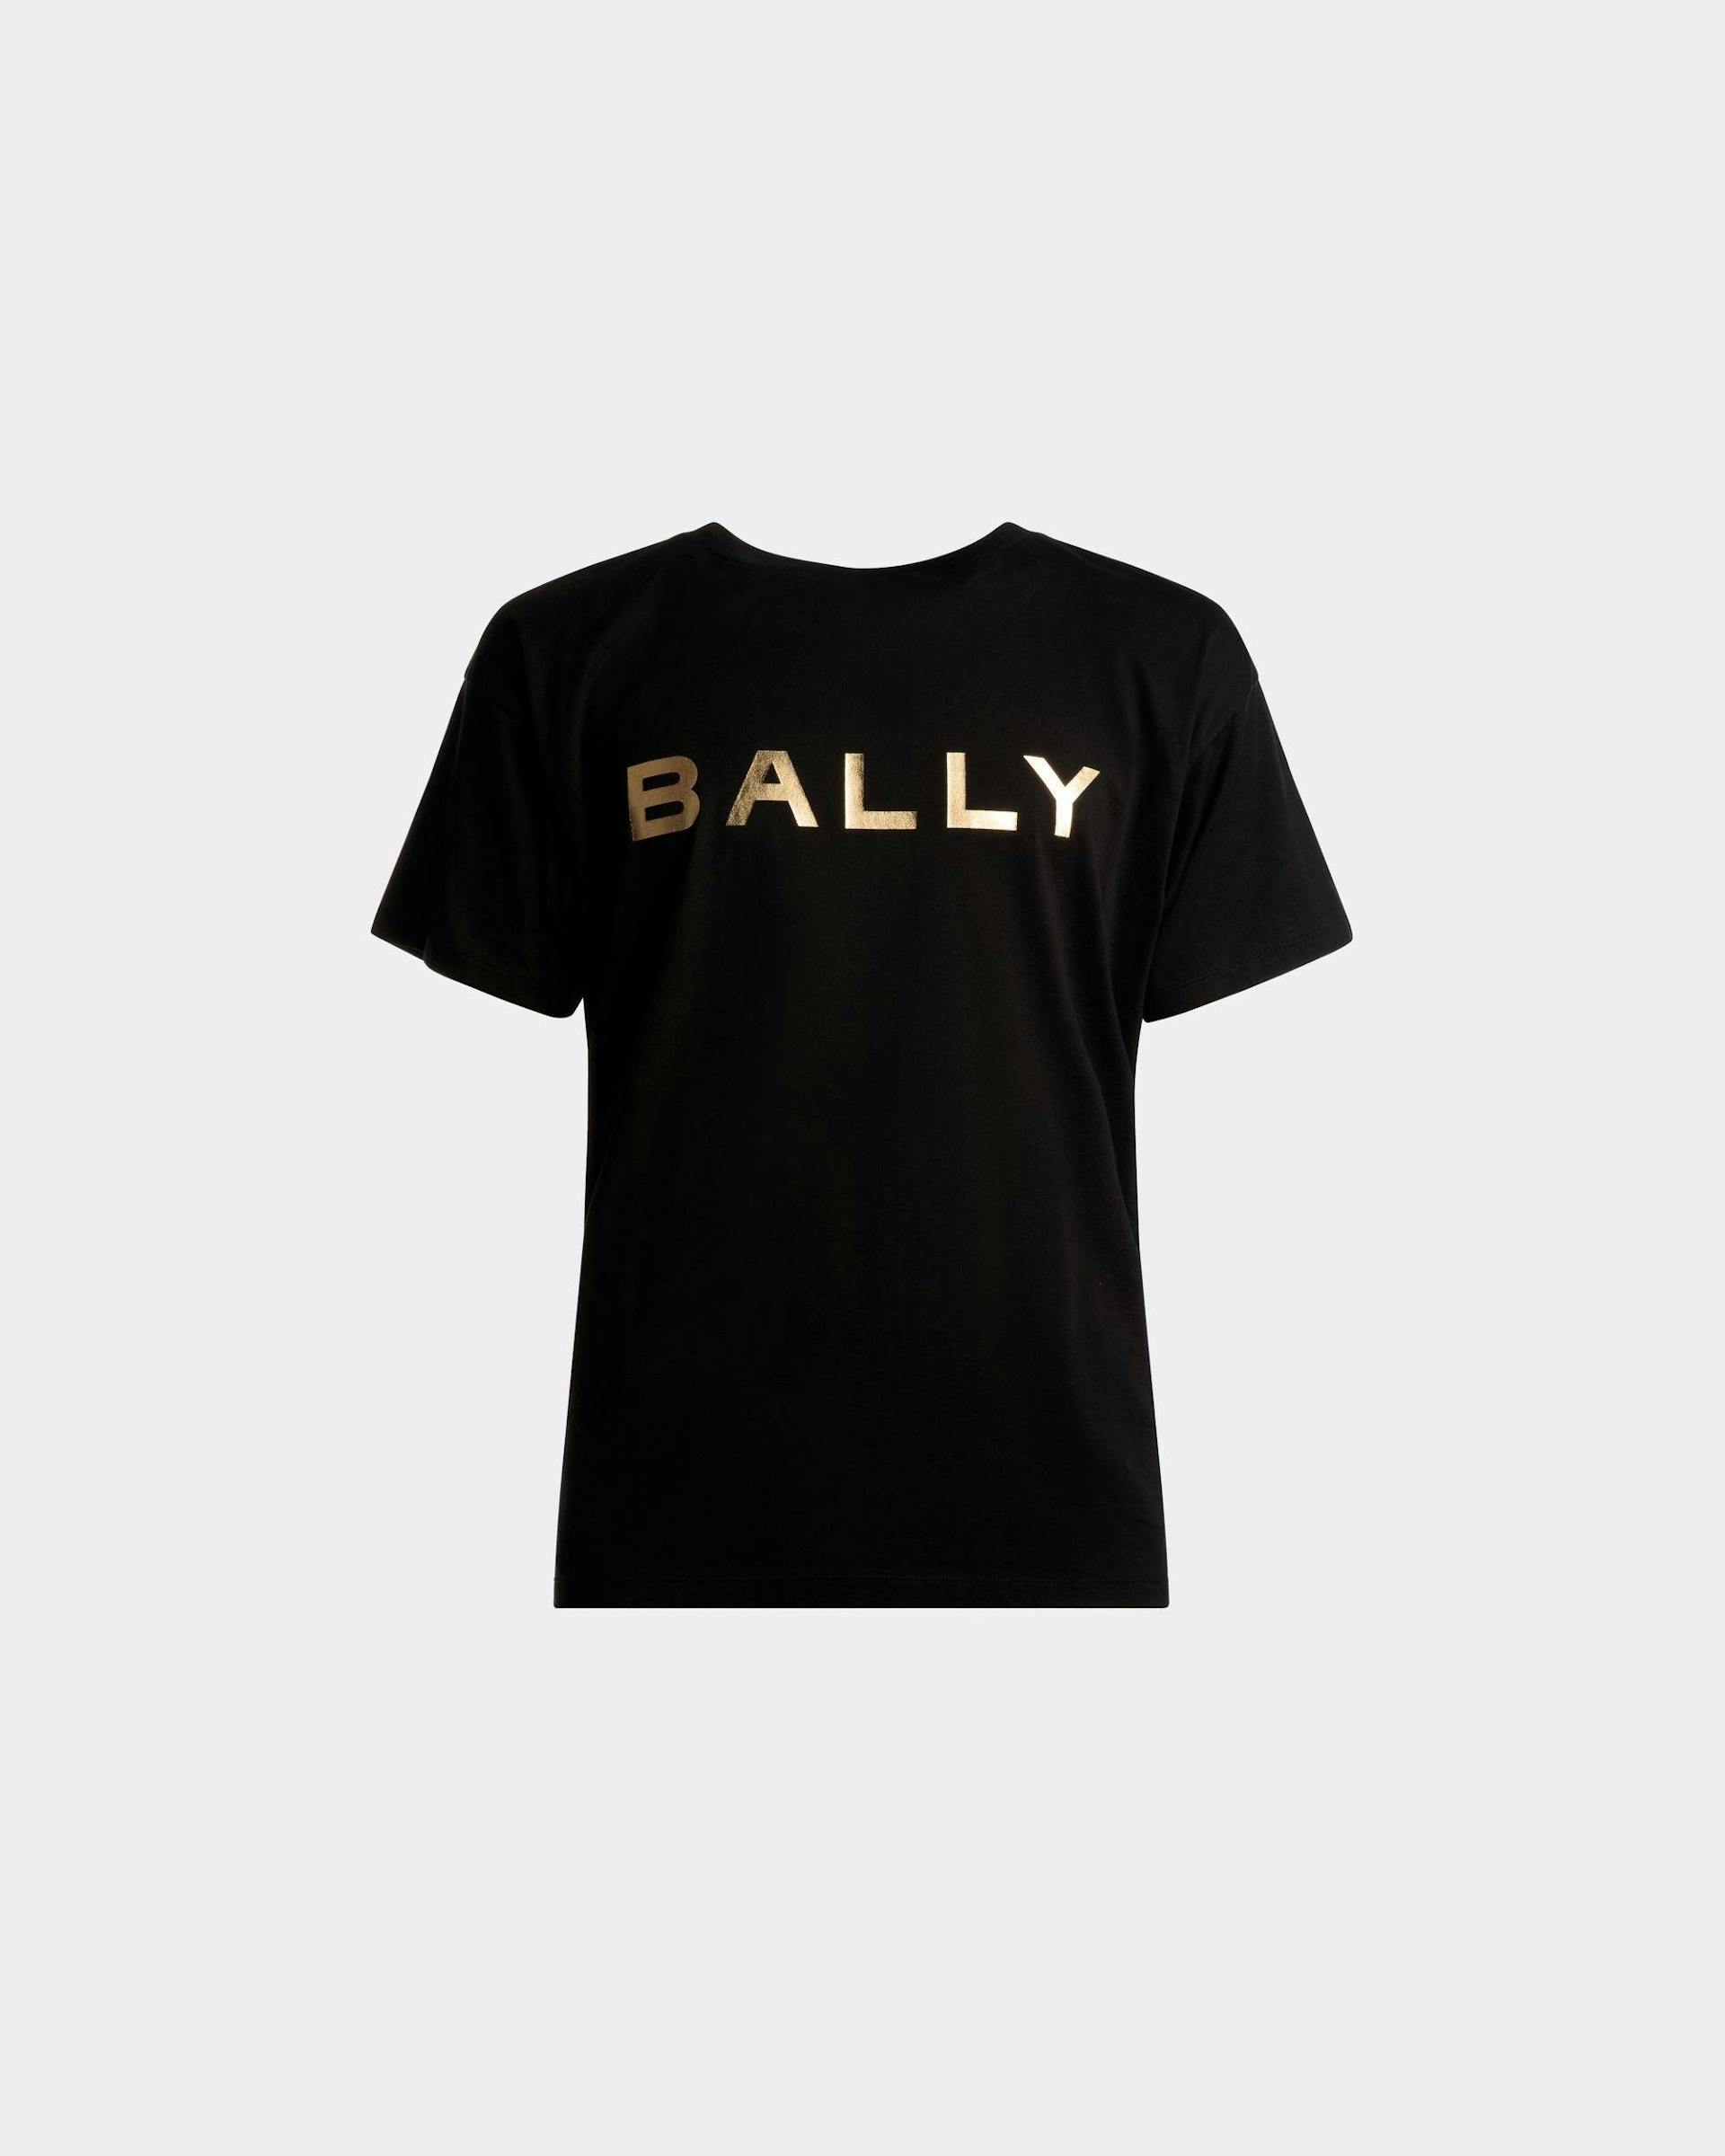 ロゴ Tシャツ ブラック コットン - Bally - 01